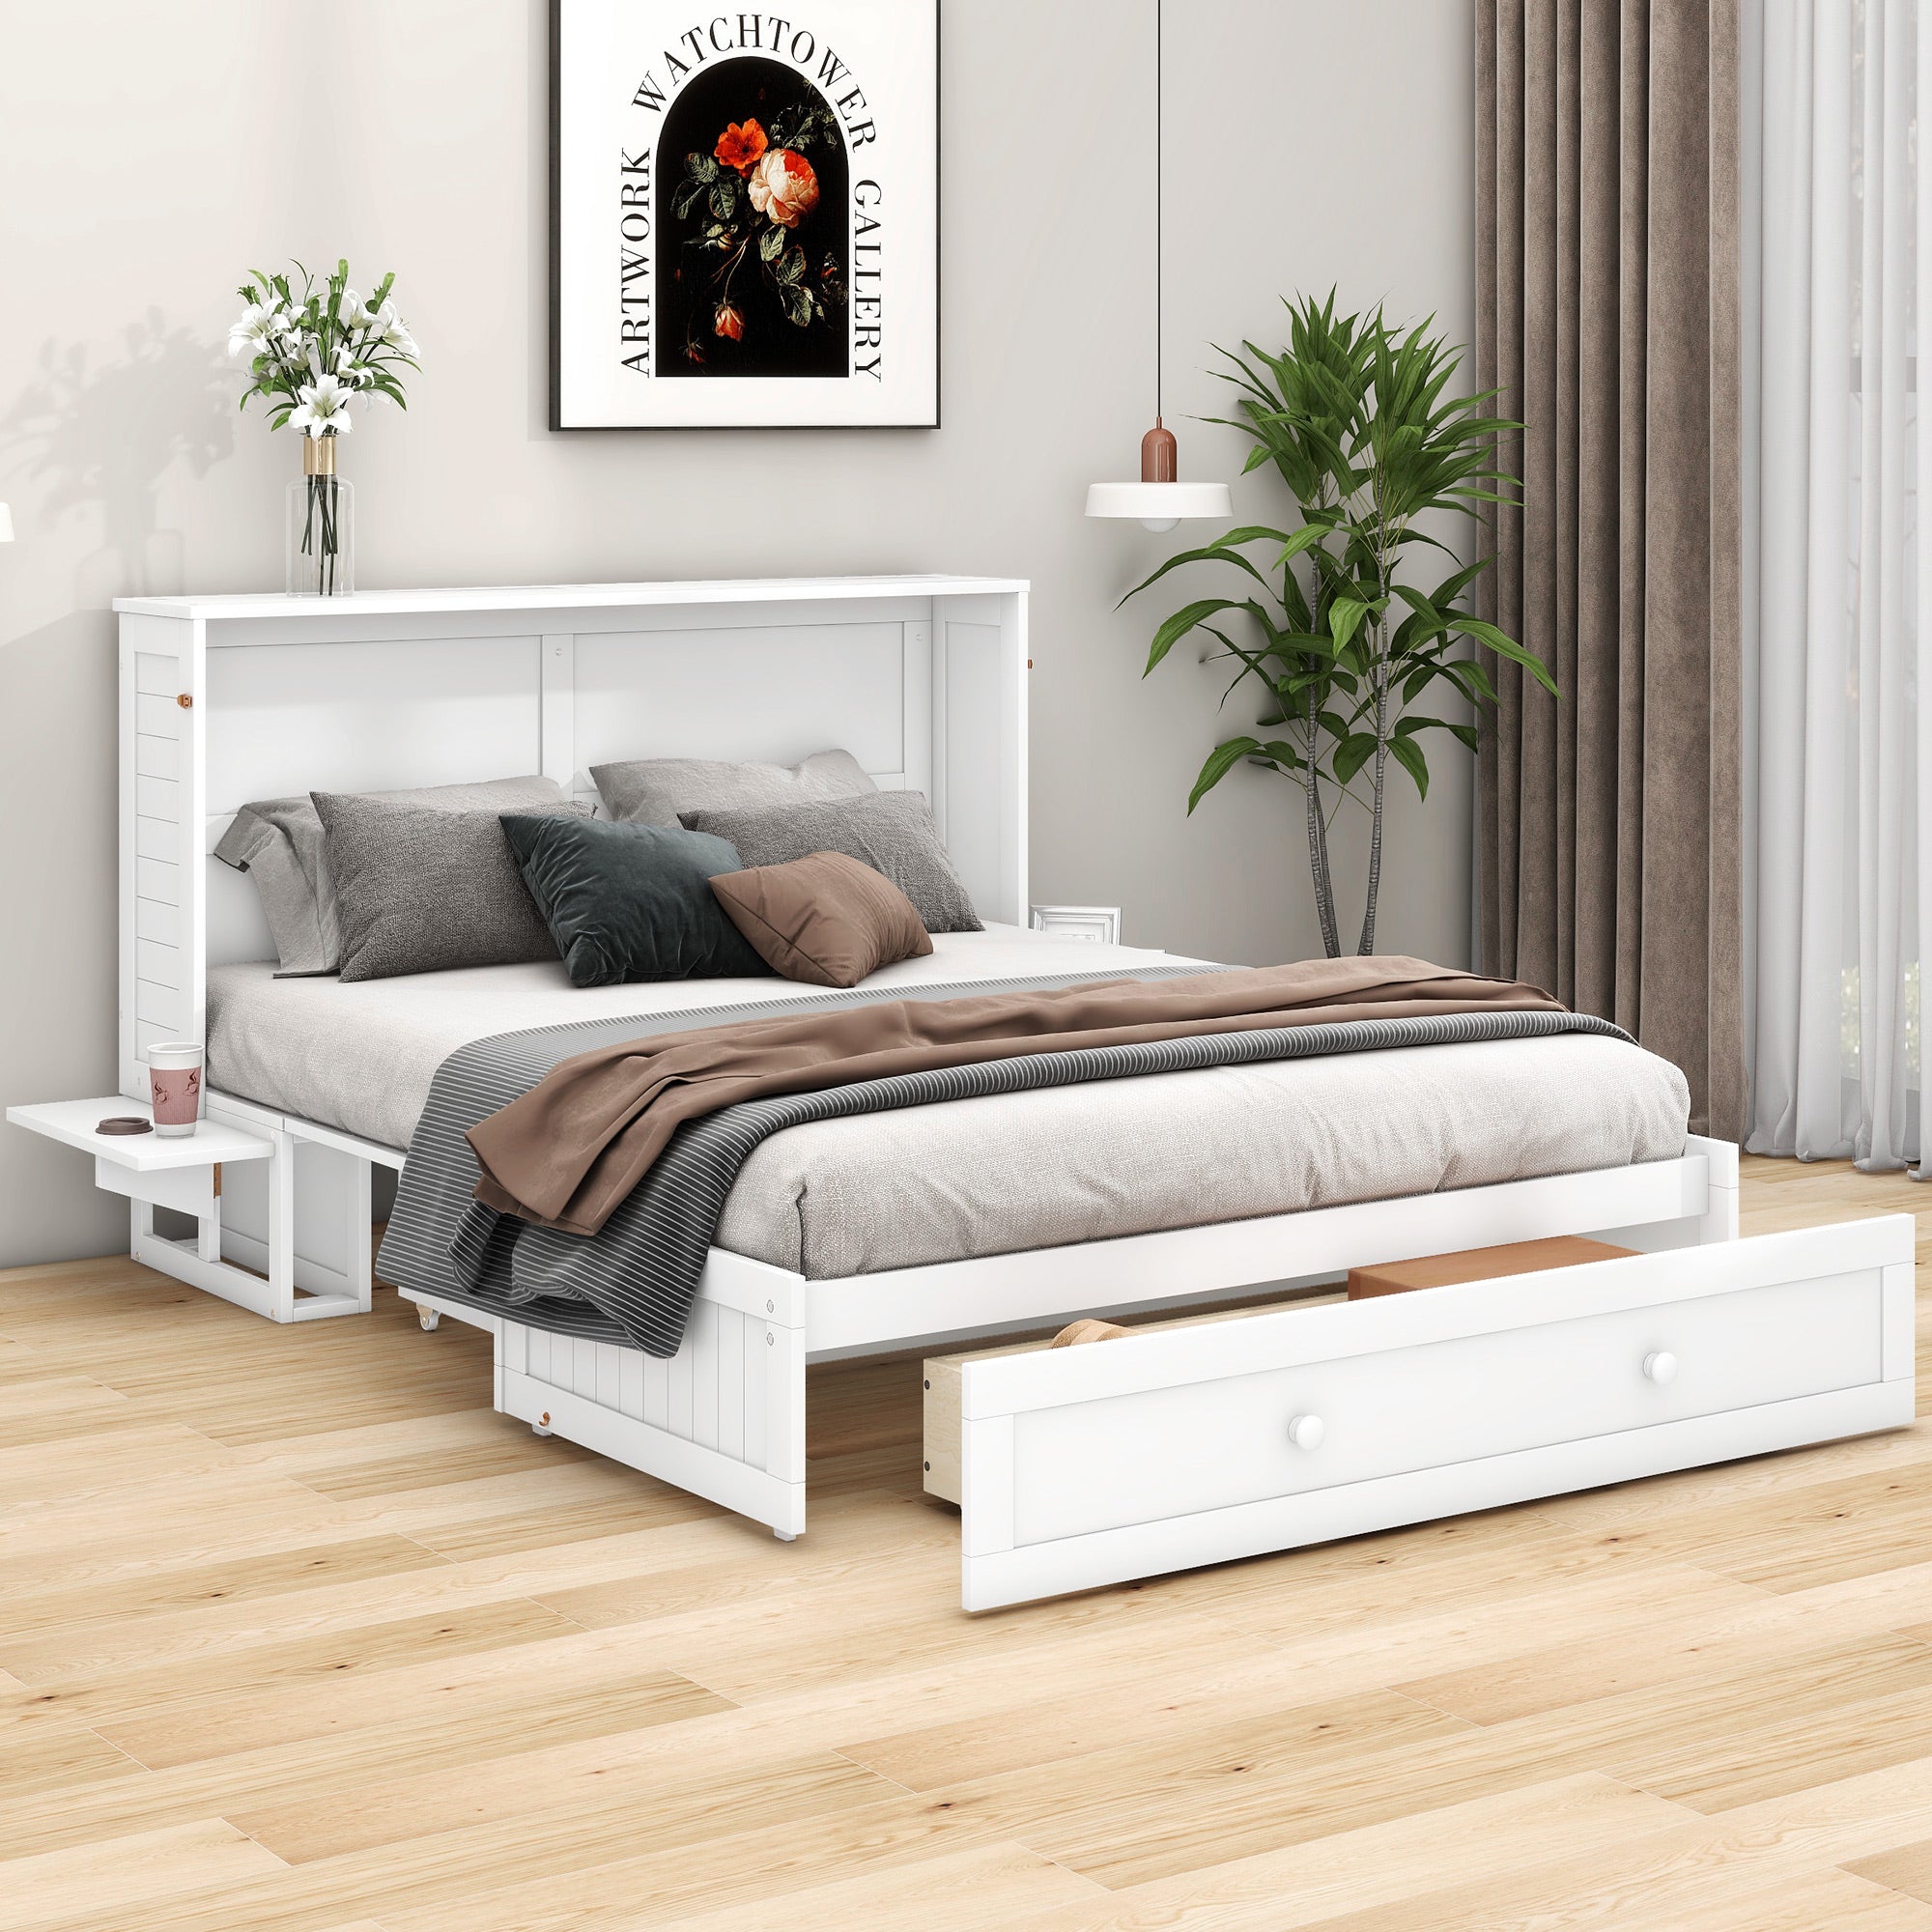 okwish Polsterbett 140 x 200 cm, mobiles Schrankbett für zu Hause, Schubladen am Ende des Bettes, kleine Ablagen an der Seite des Bettes, umwandelbares Plattformbett, weiß